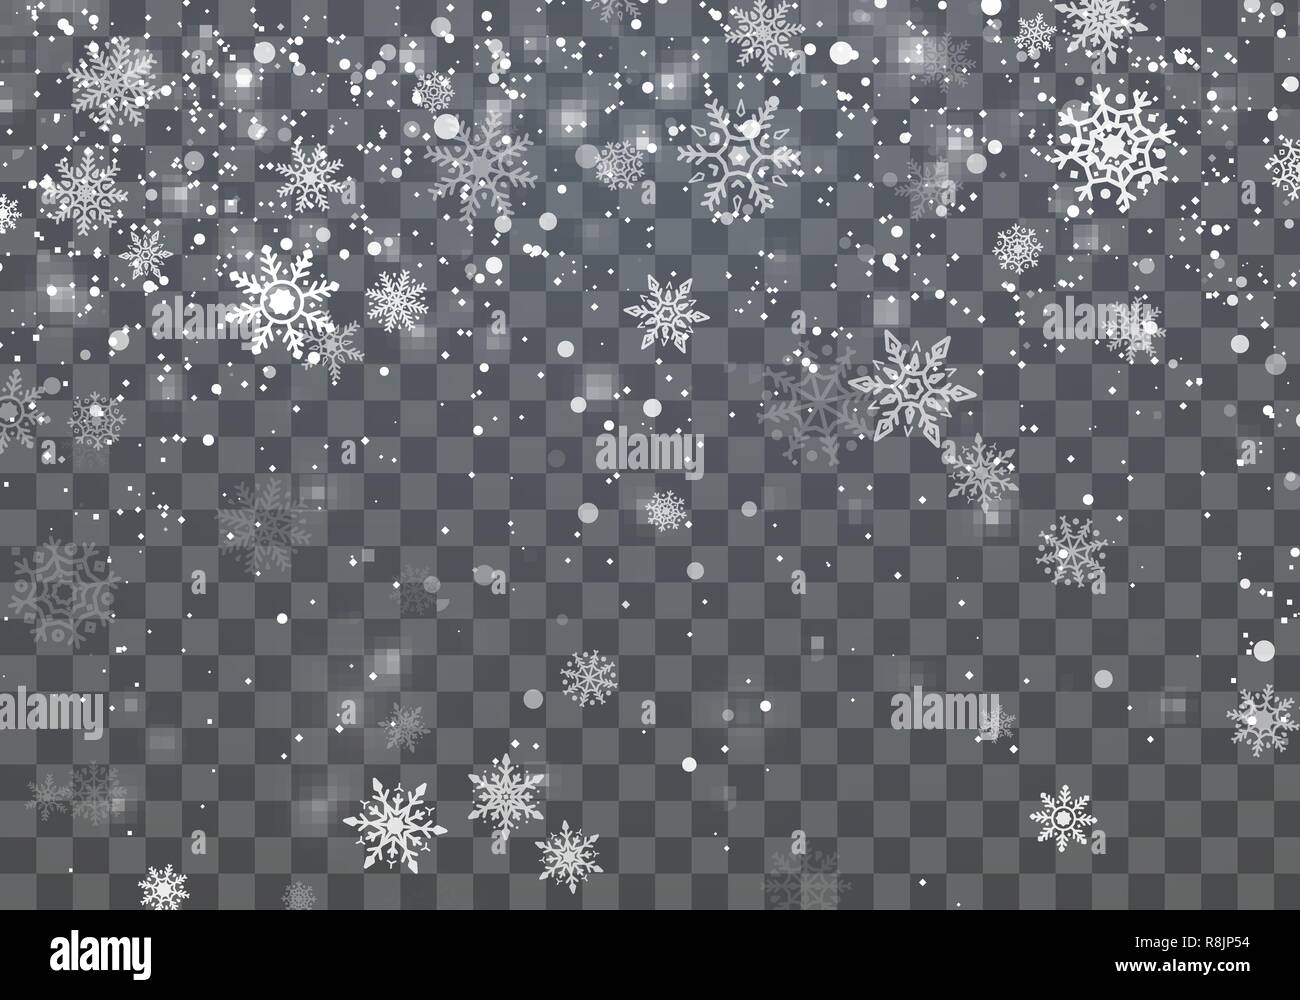 Weihnachten Hintergrund mit fallenden Schneeflocken. Winterurlaub Hintergrund. Vector Illustration Stock Vektor